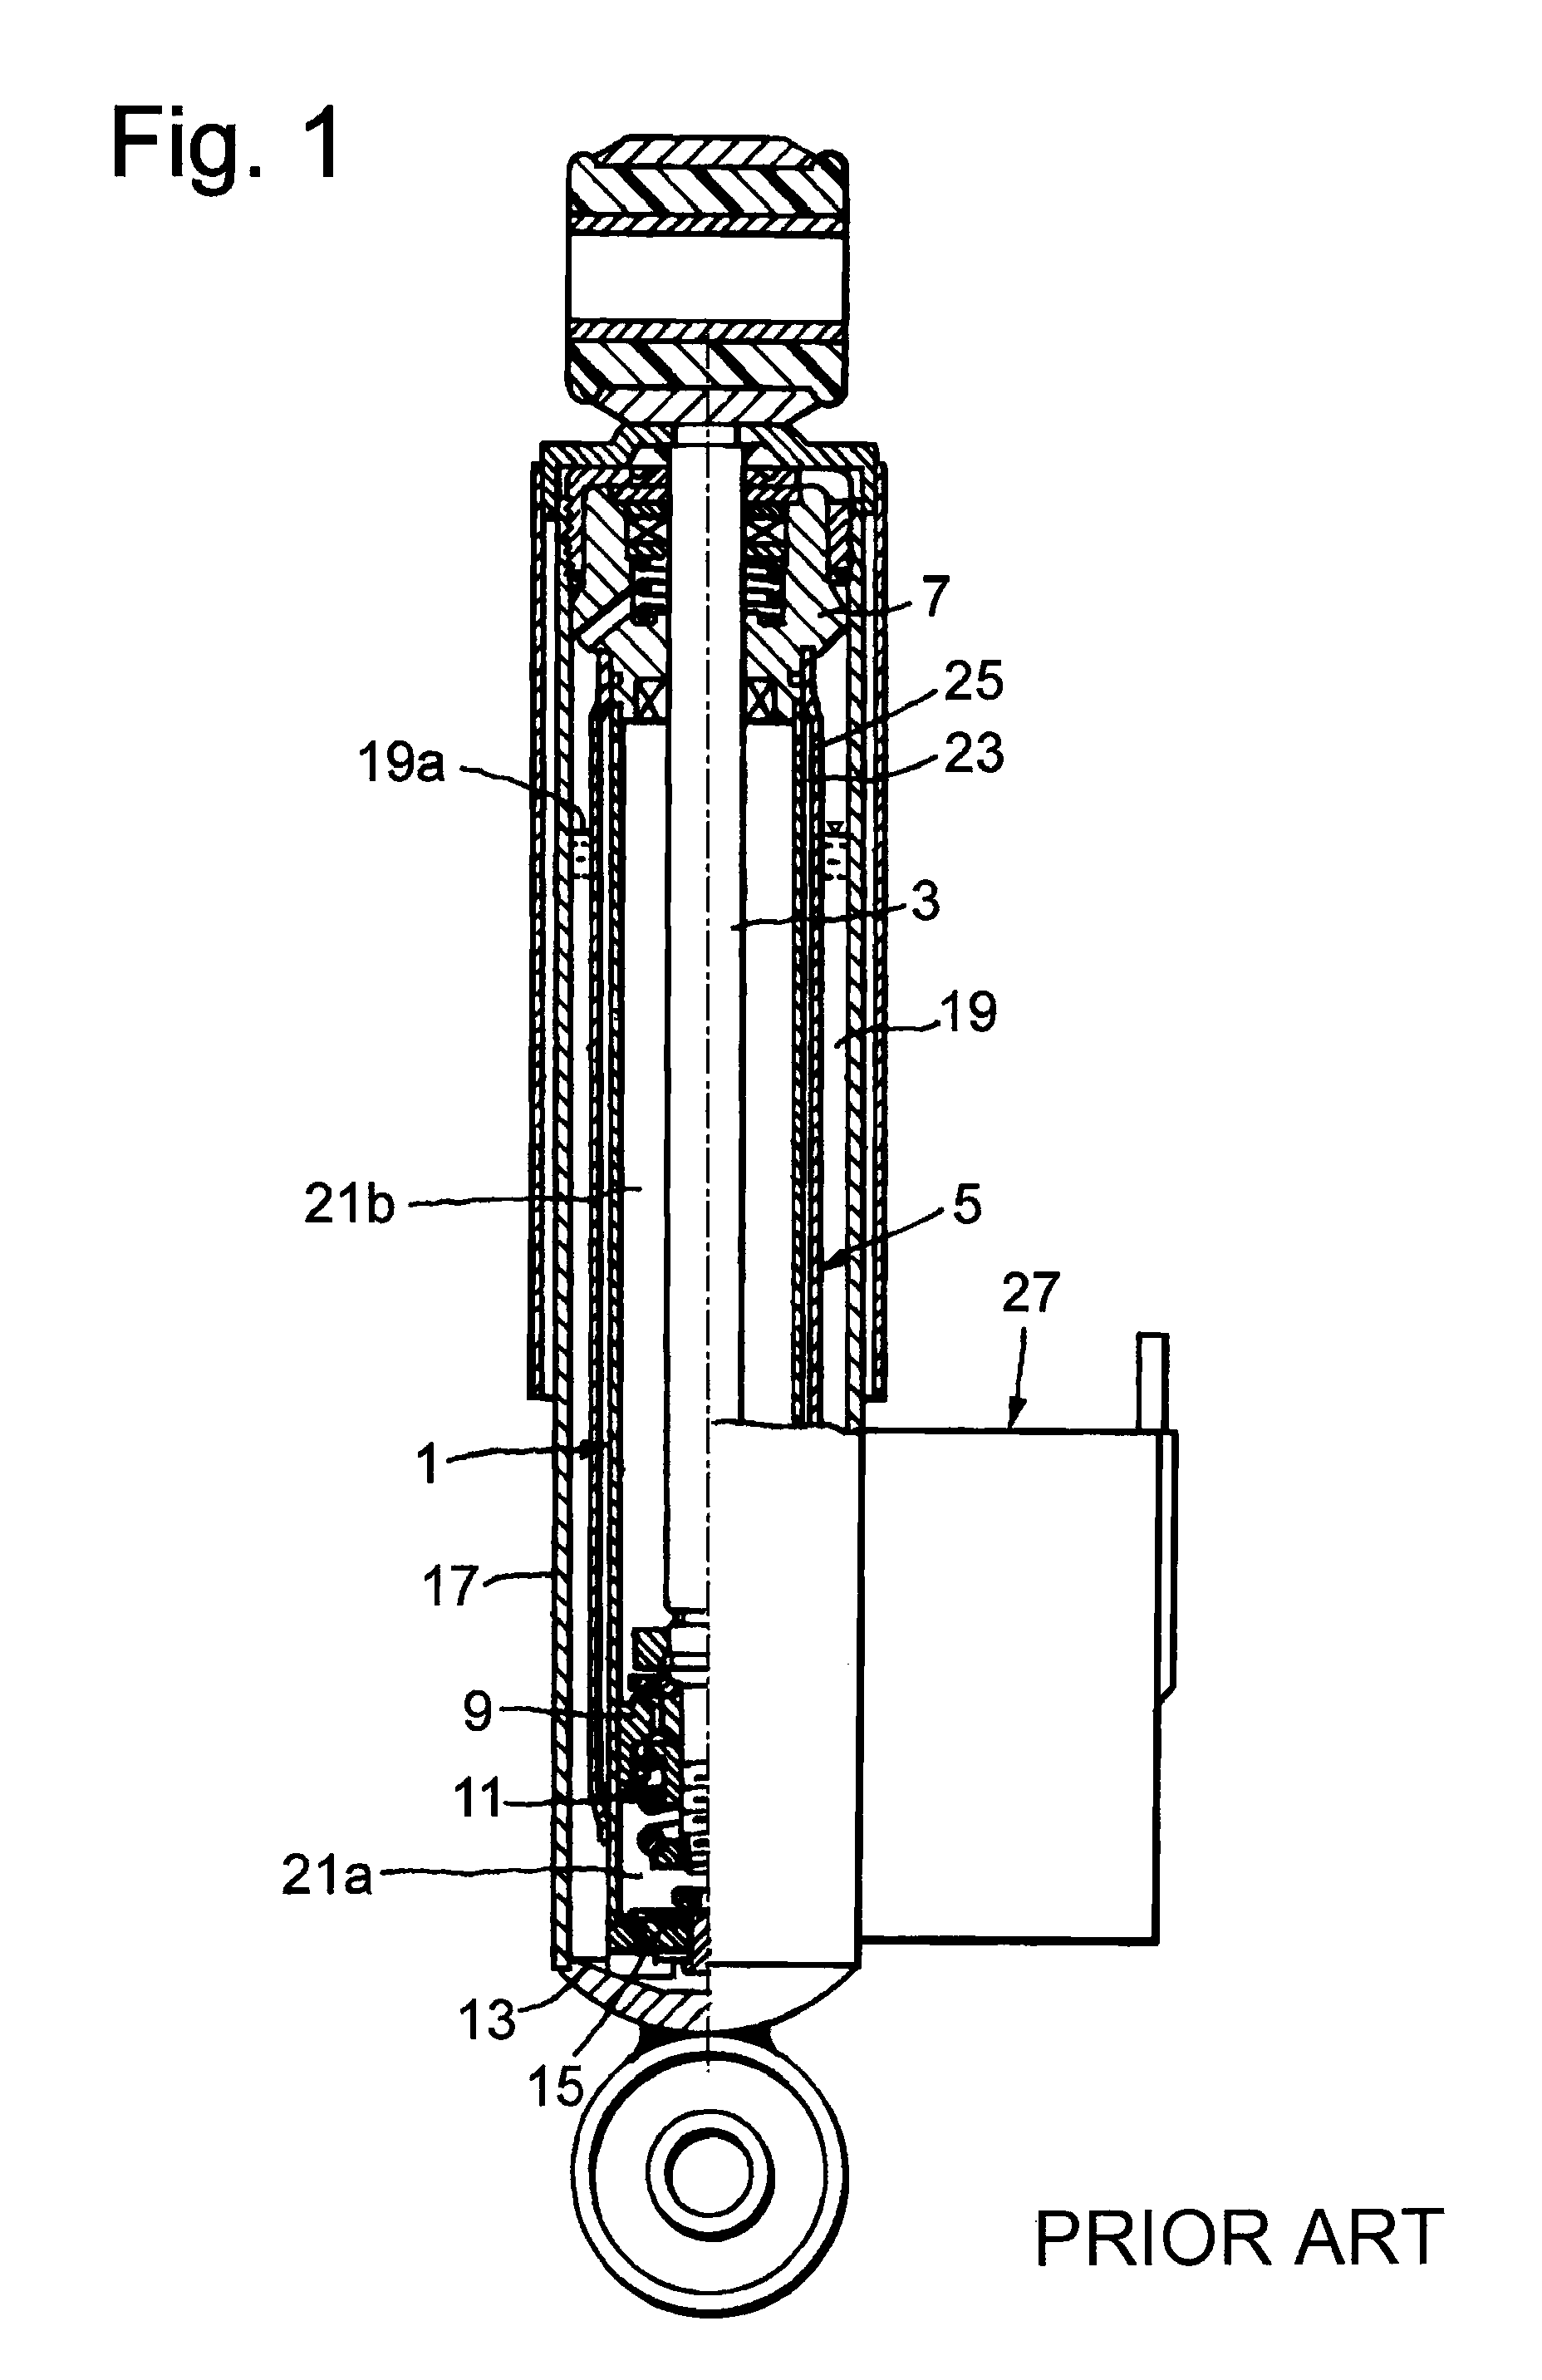 Adjustable damping valve for a vibration damper